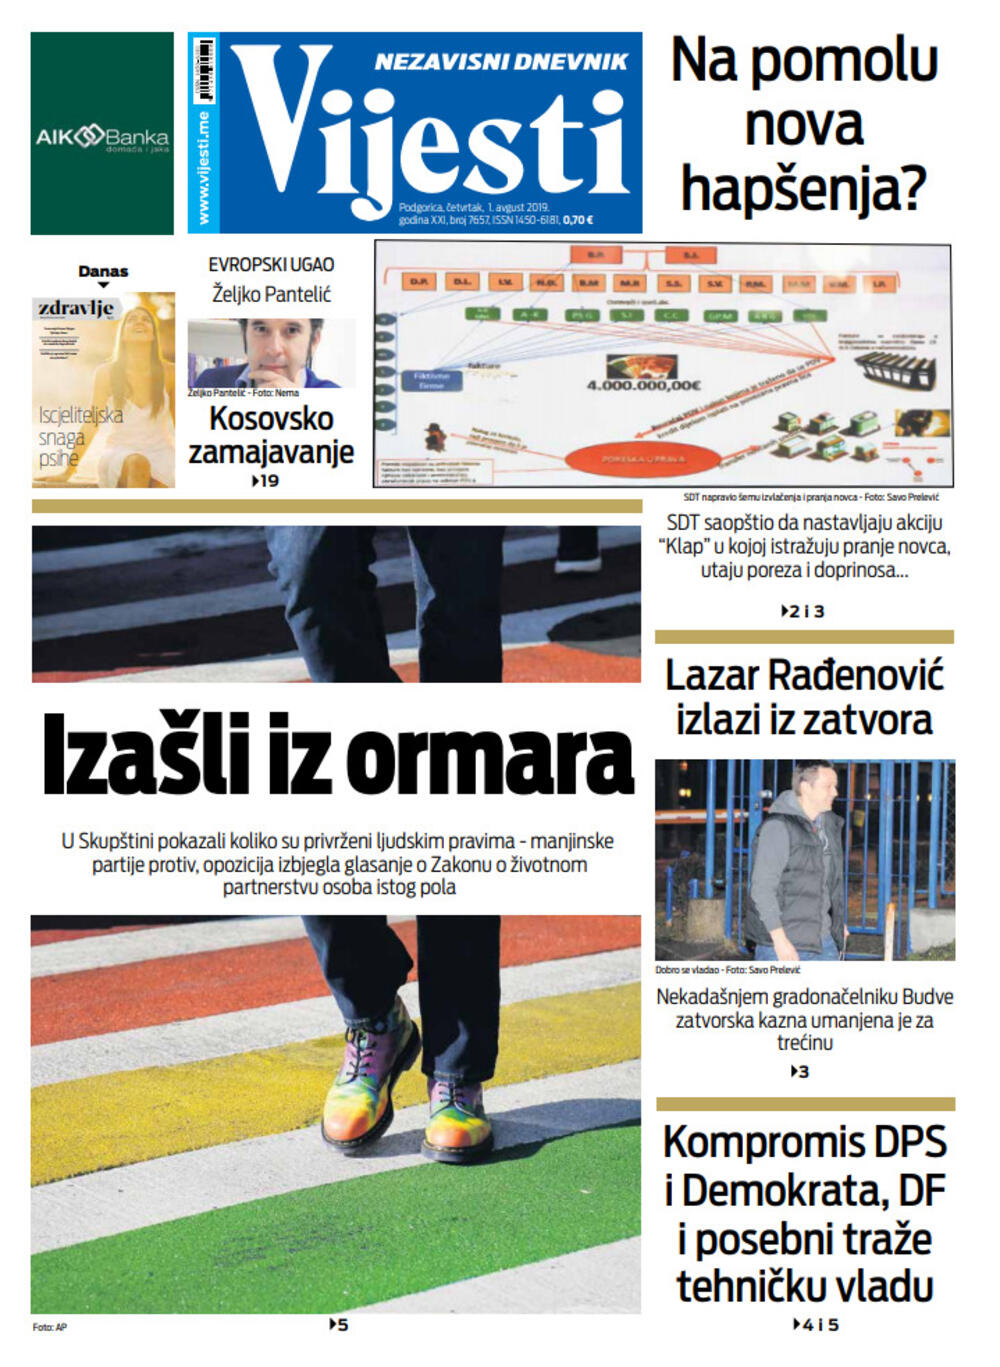 Naslovna strana Vijesti za 1. avgust, Foto: Vijesti